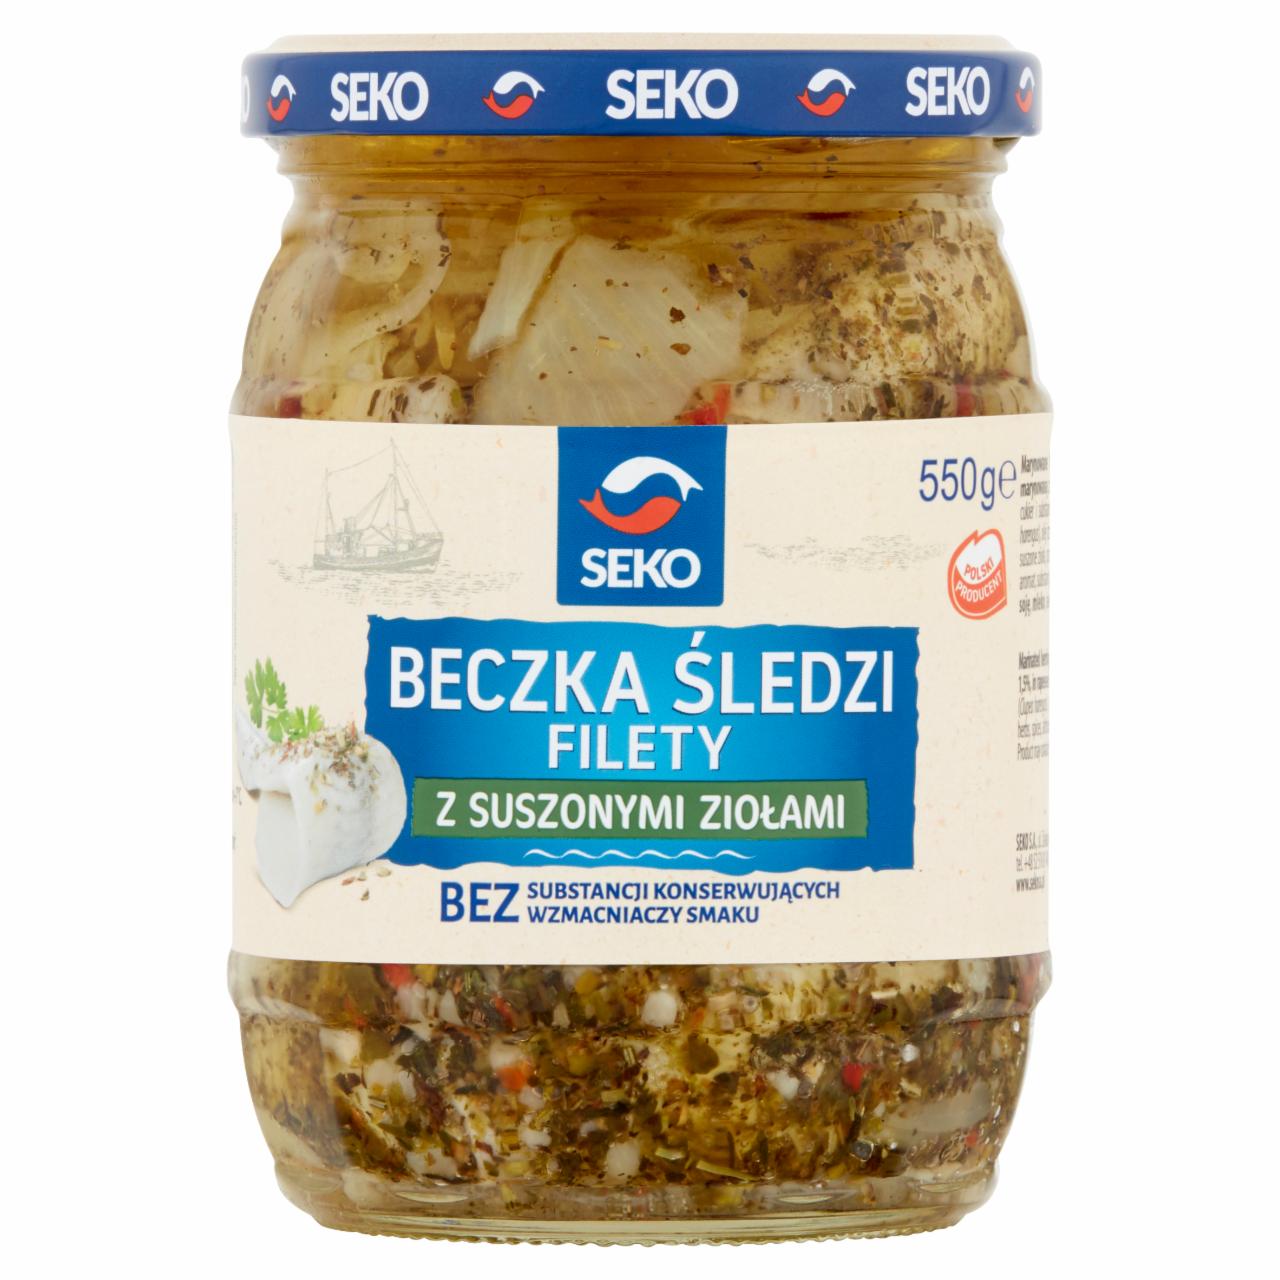 Zdjęcia - Seko Beczka śledzi Filety z suszonymi ziołami 550 g